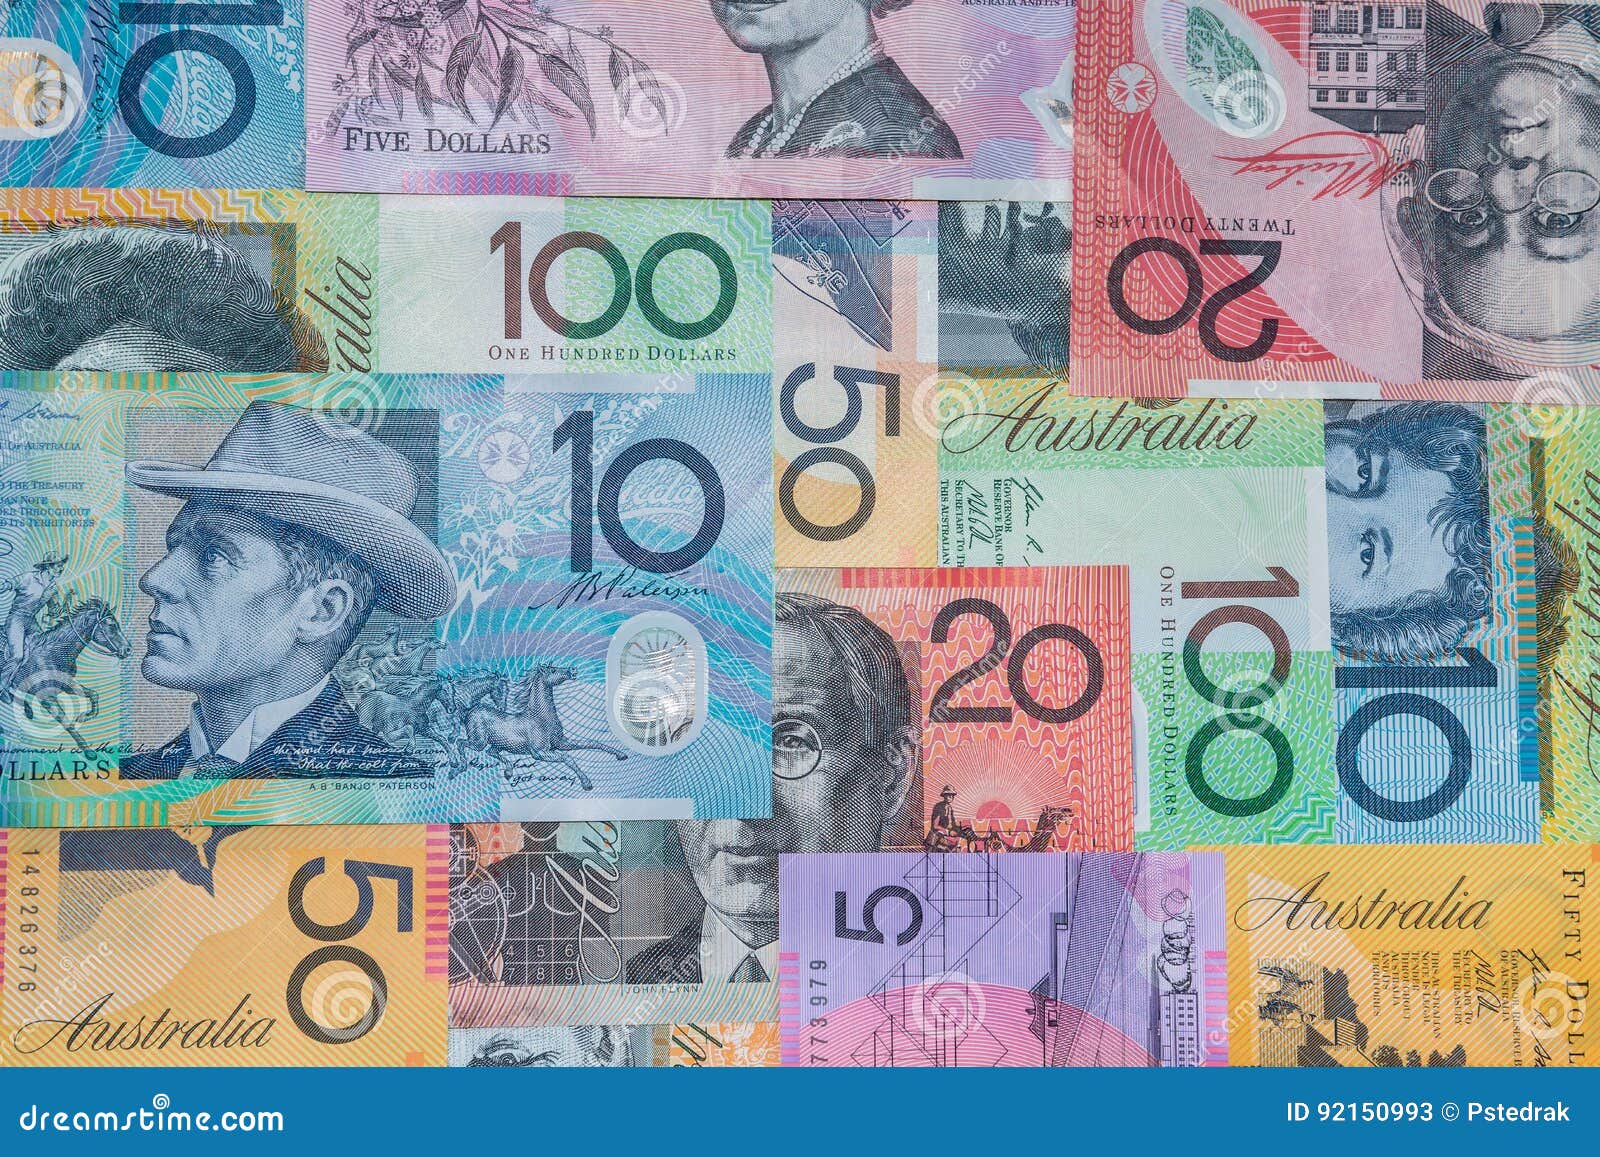 澳洲.我的新生活: 要帶多少錢出國、澳洲錢幣大小事